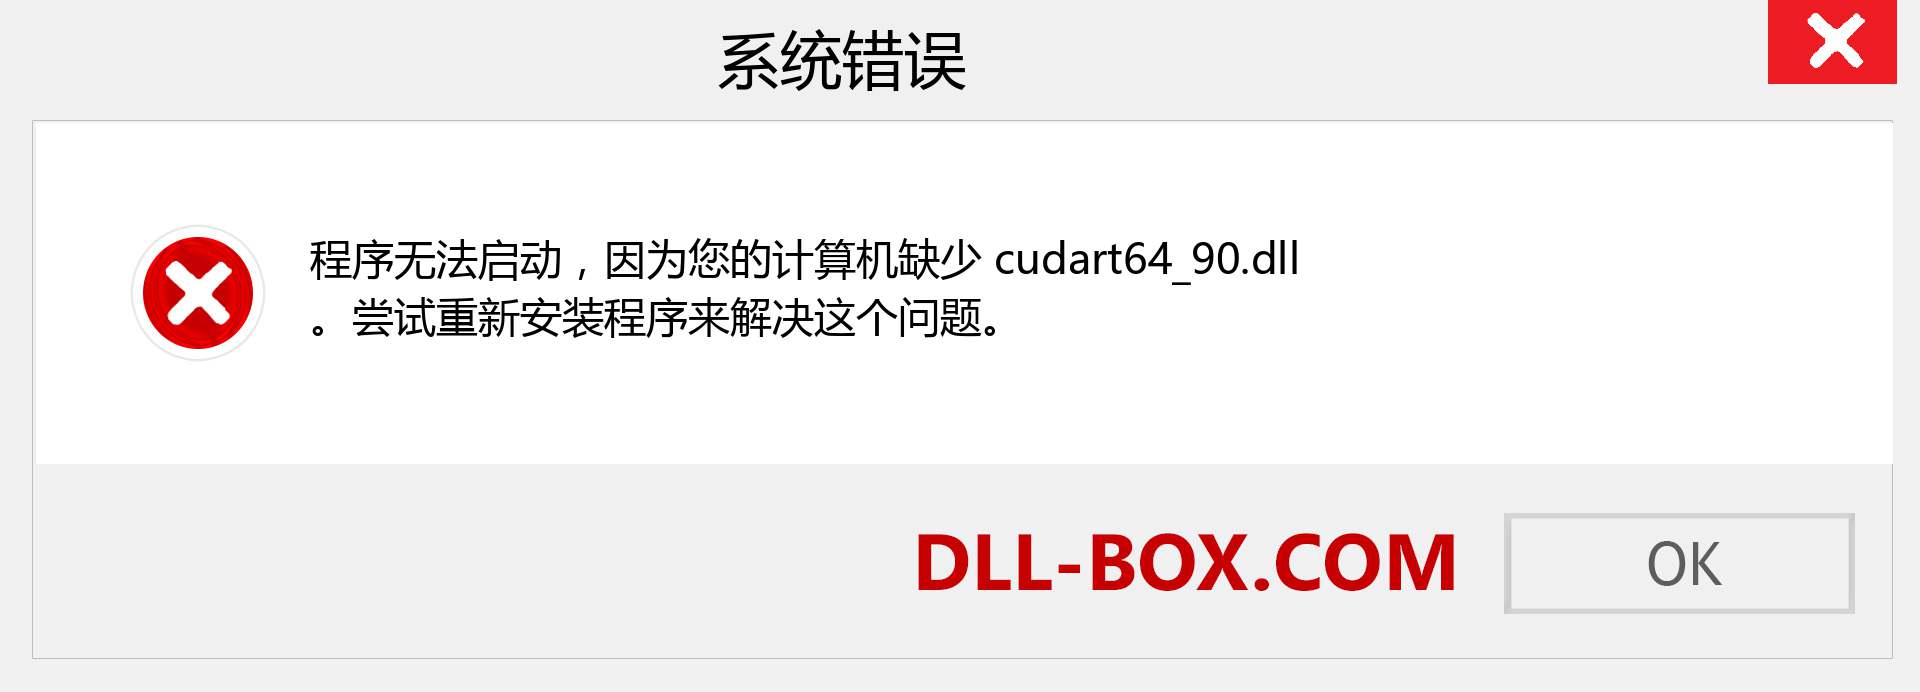 cudart64_90.dll 文件丢失？。 适用于 Windows 7、8、10 的下载 - 修复 Windows、照片、图像上的 cudart64_90 dll 丢失错误